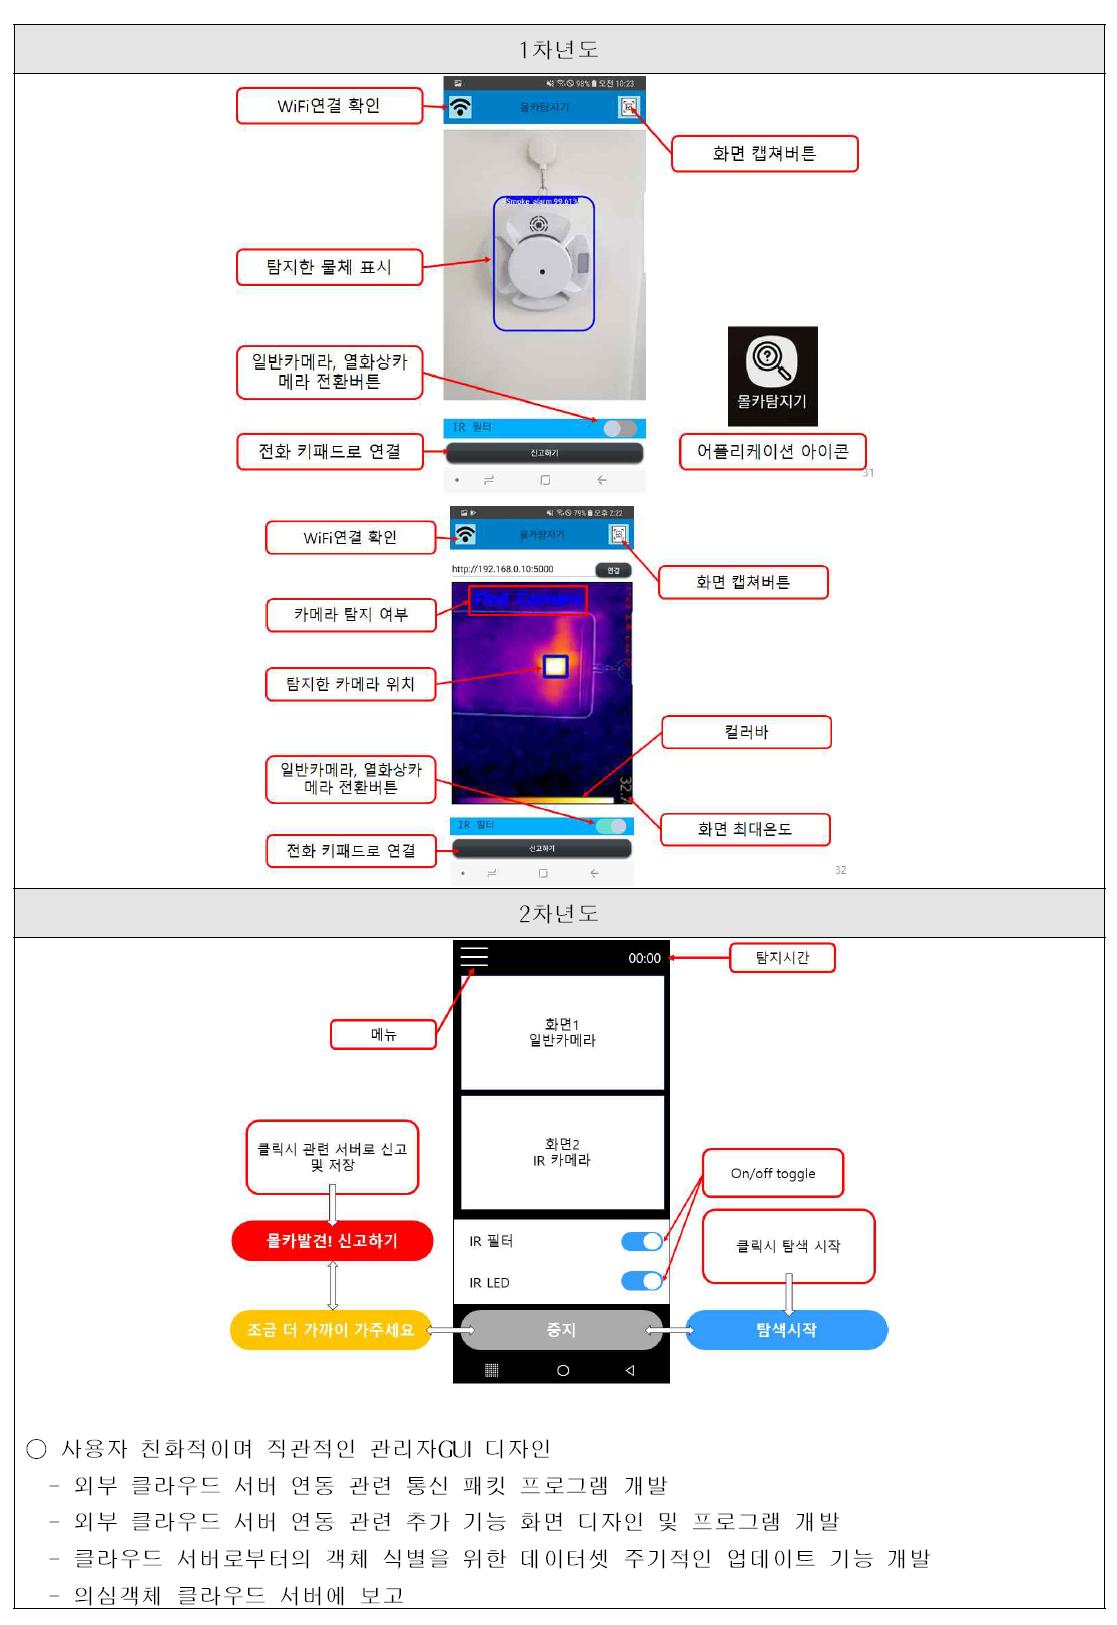 스마트폰 어플 UI 기본 설계